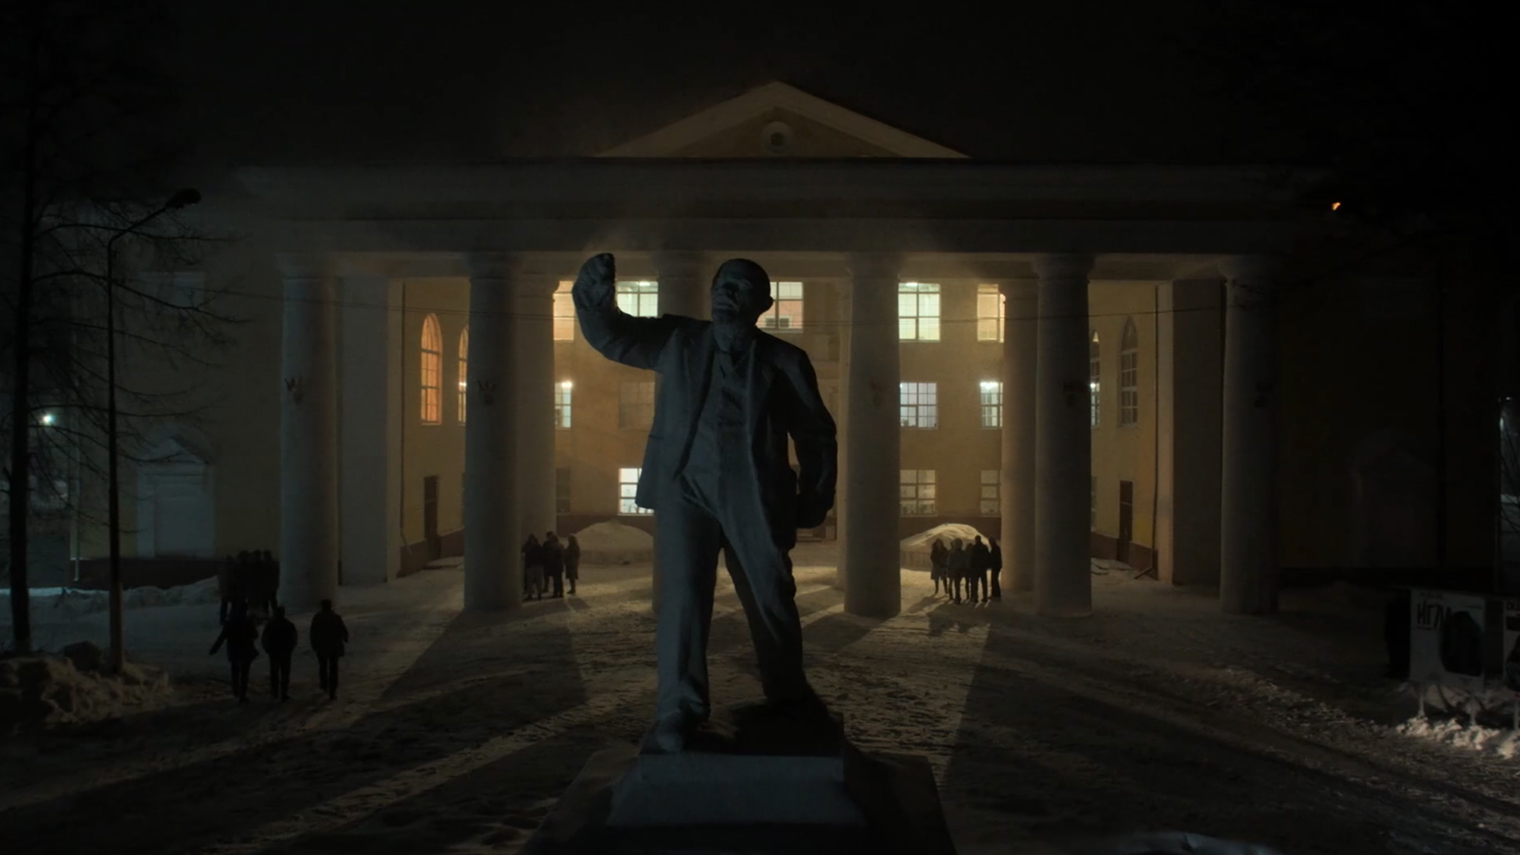 Дискотеку во втором эпизоде снимали в ярославском ДК «Гамма». В действительности перед зданием нет статуи Ленина. Кадр: Wink